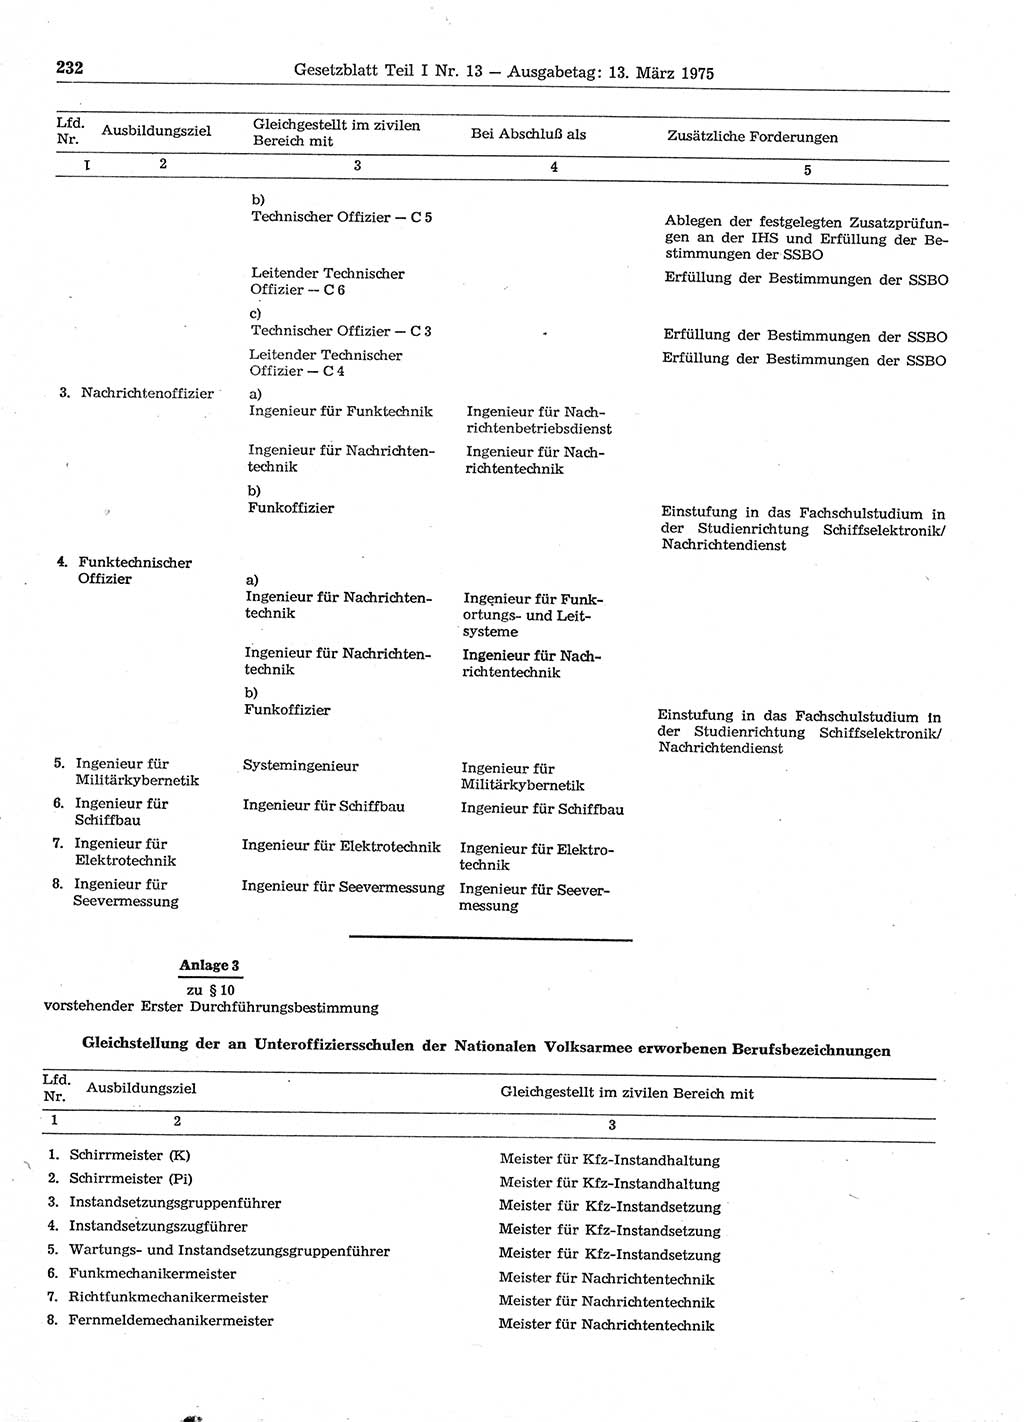 Gesetzblatt (GBl.) der Deutschen Demokratischen Republik (DDR) Teil Ⅰ 1975, Seite 232 (GBl. DDR Ⅰ 1975, S. 232)